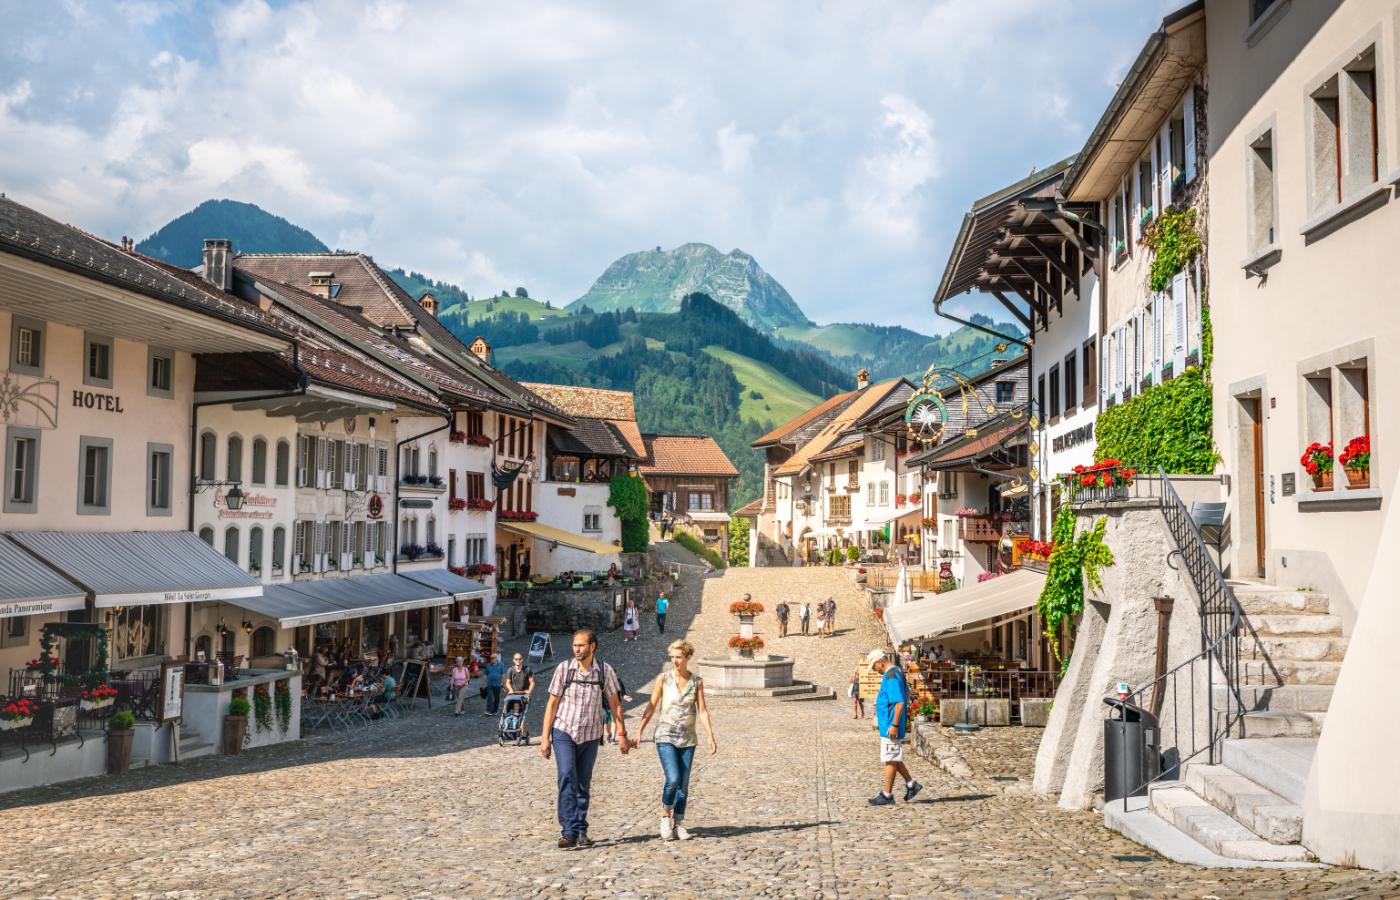 Główna uliczka w średniowiecznym miasteczku Gruyeres, ojczyźnie jednego z najbardziej znanych szwajcarskich serów. (Fot. iStock)